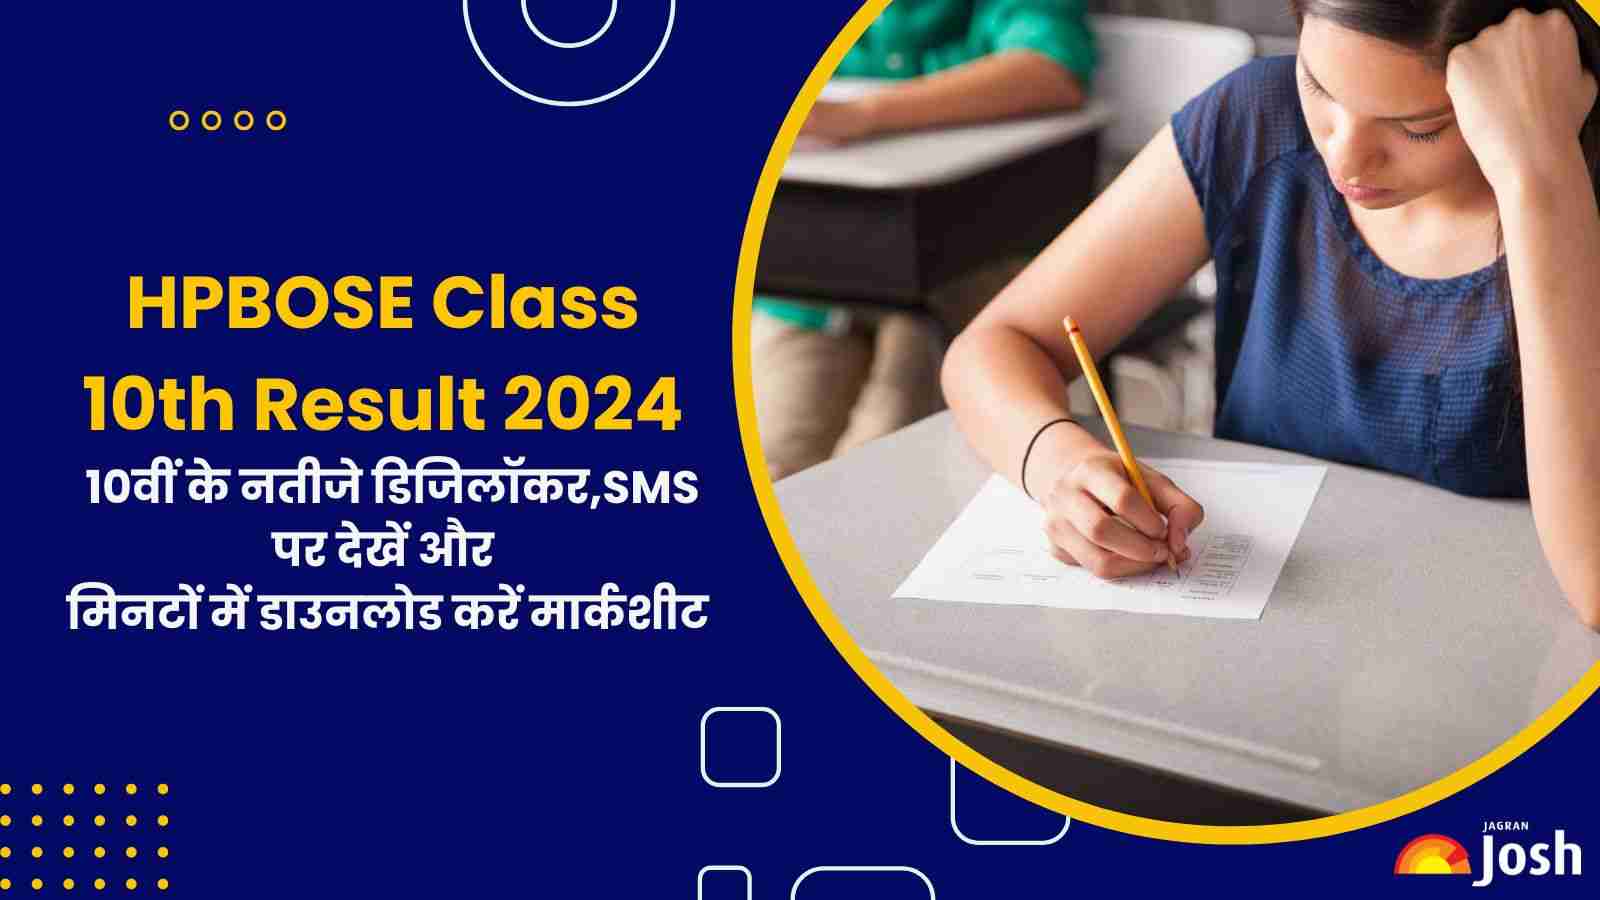 HPBOSE Class 10th Result 2024: हिमाचल 10वीं के नतीजे डिजिलॉकर, एसएमएस पर देखें और मिनटों में डाउनलोड करें मार्कशीट    